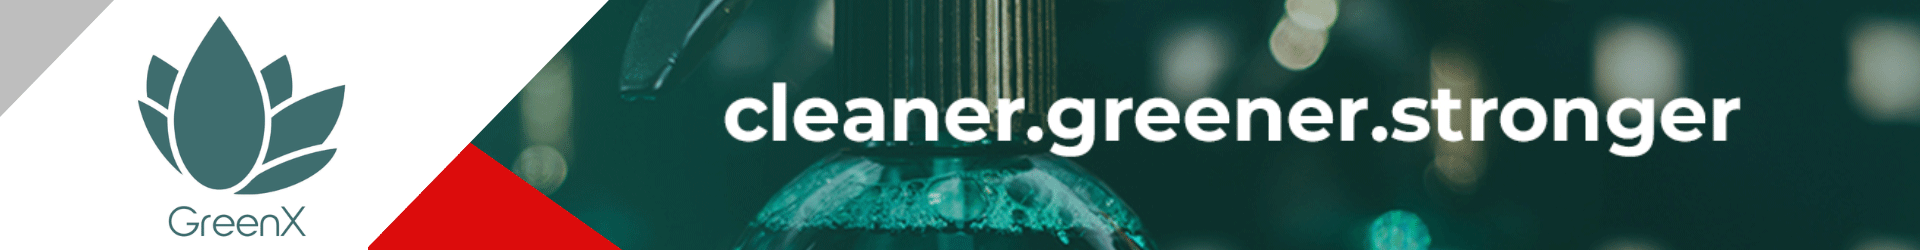 GreenX Cleaner | Greener | Longer